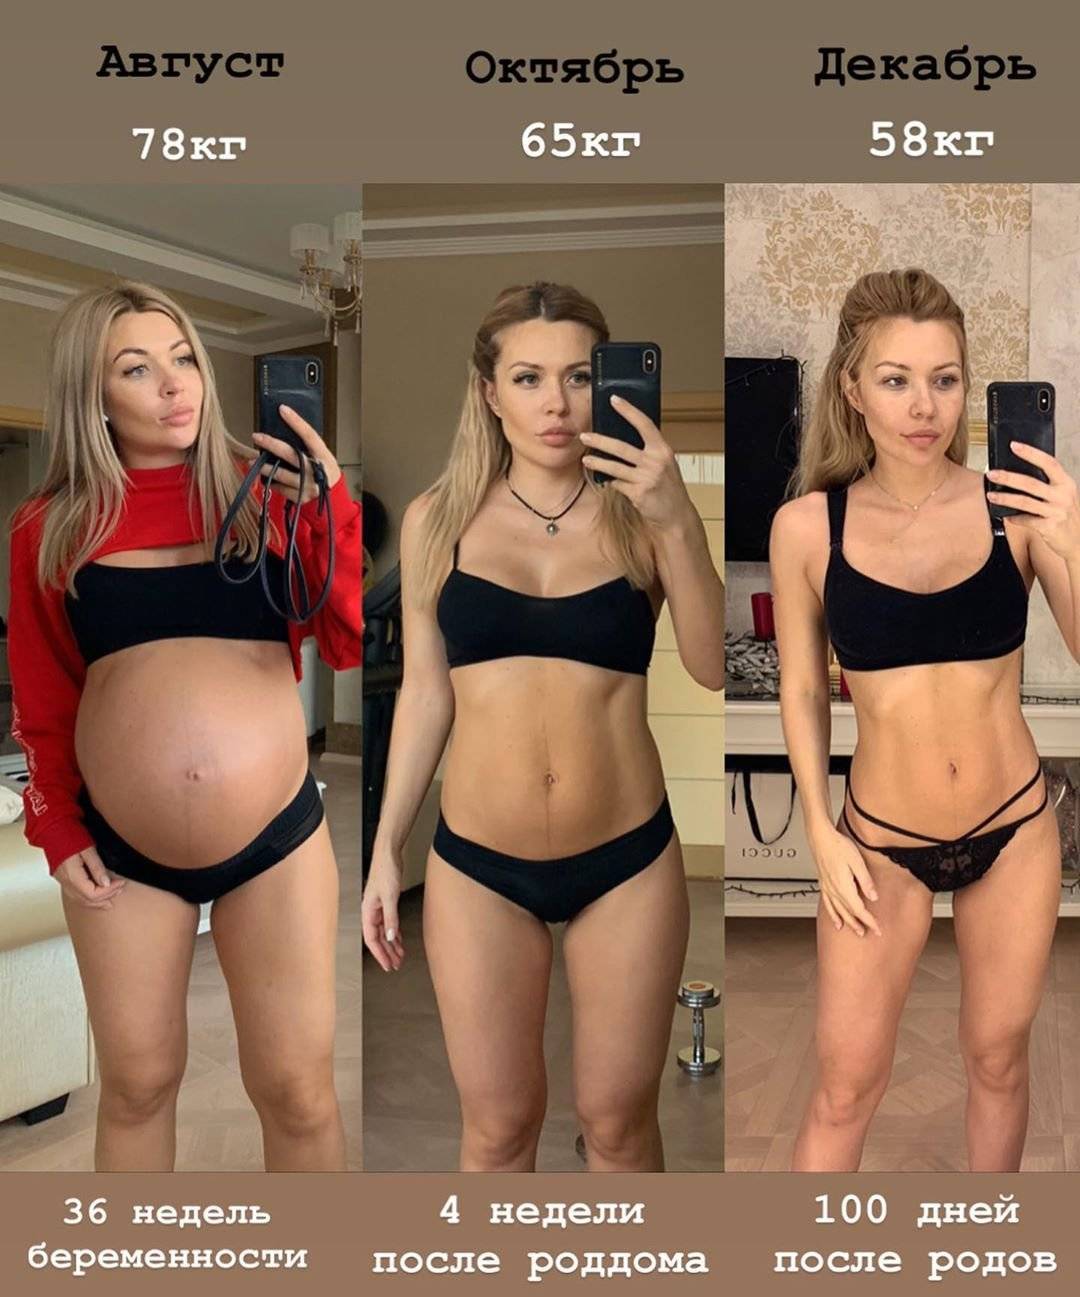 3 месяца бодибилдинга — как меняется девушка (реальный пример, фото до и после)